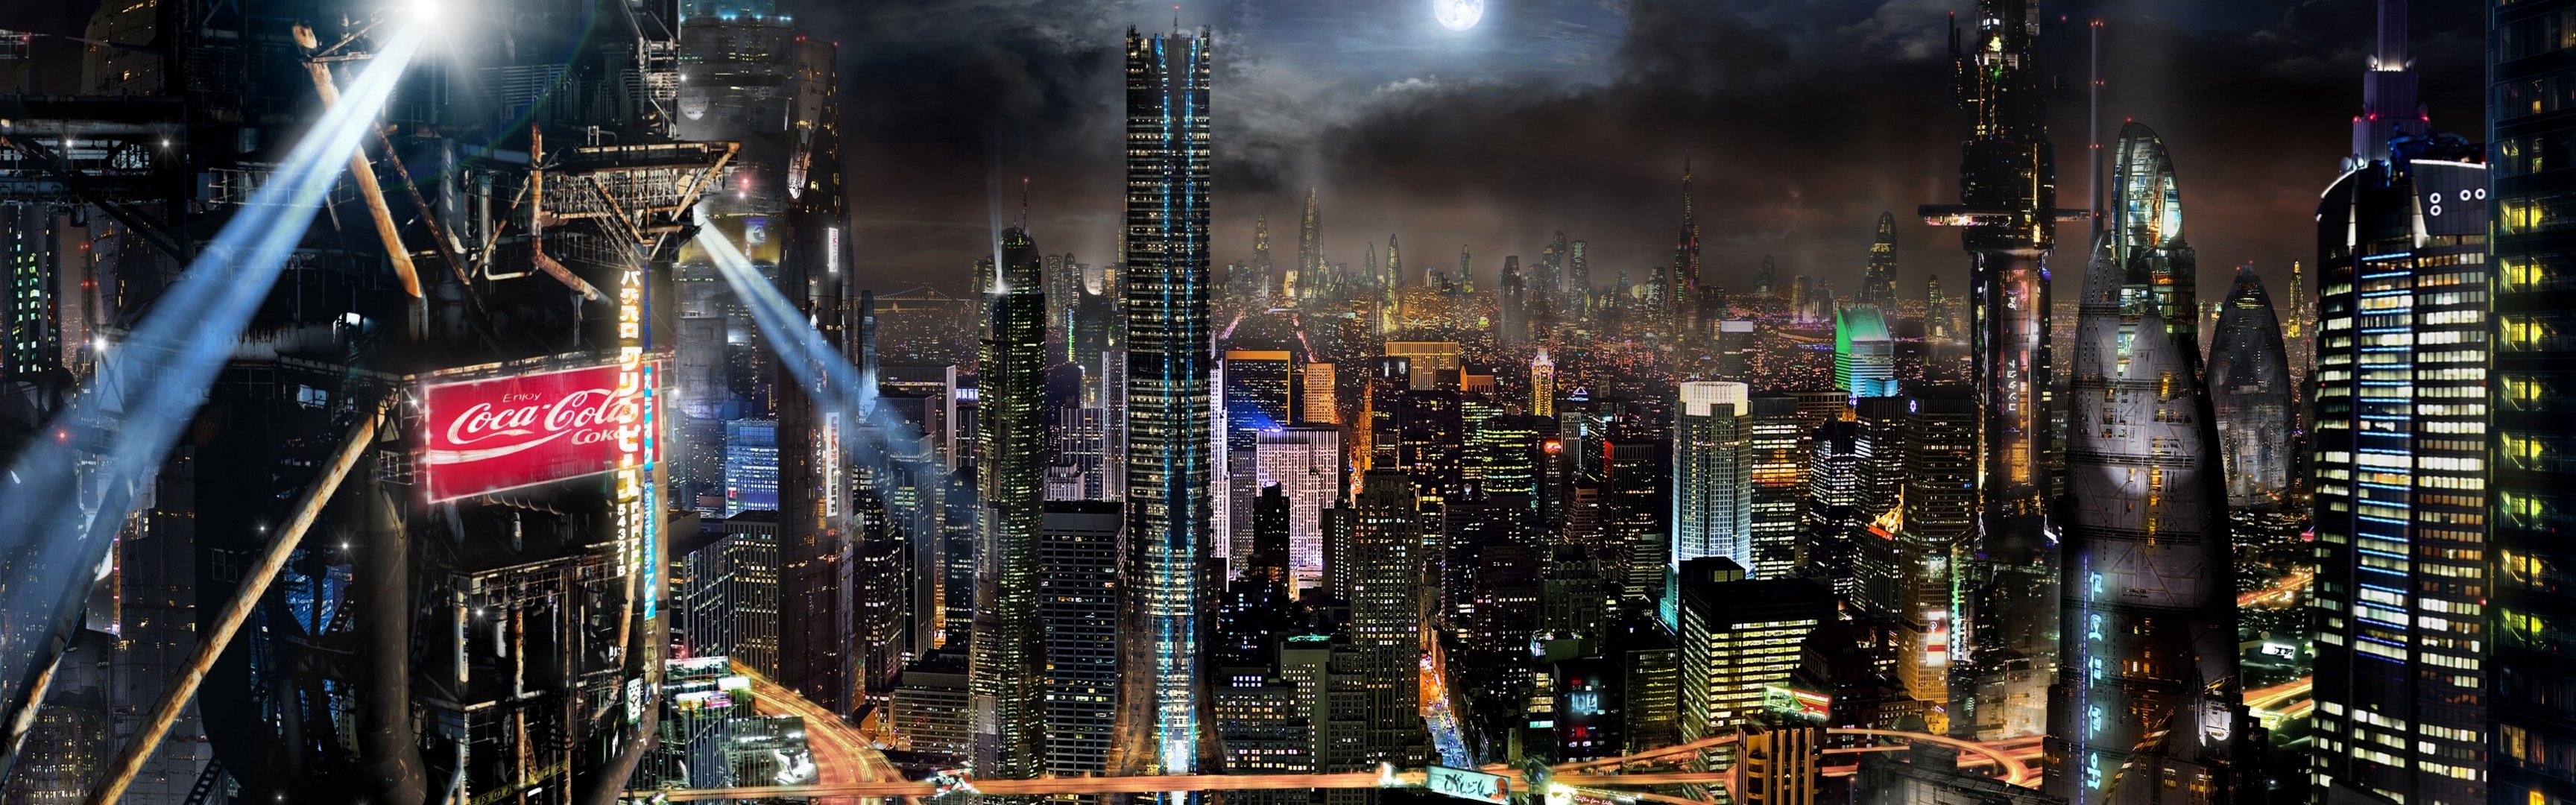 ночной город реклама прожектора панорама